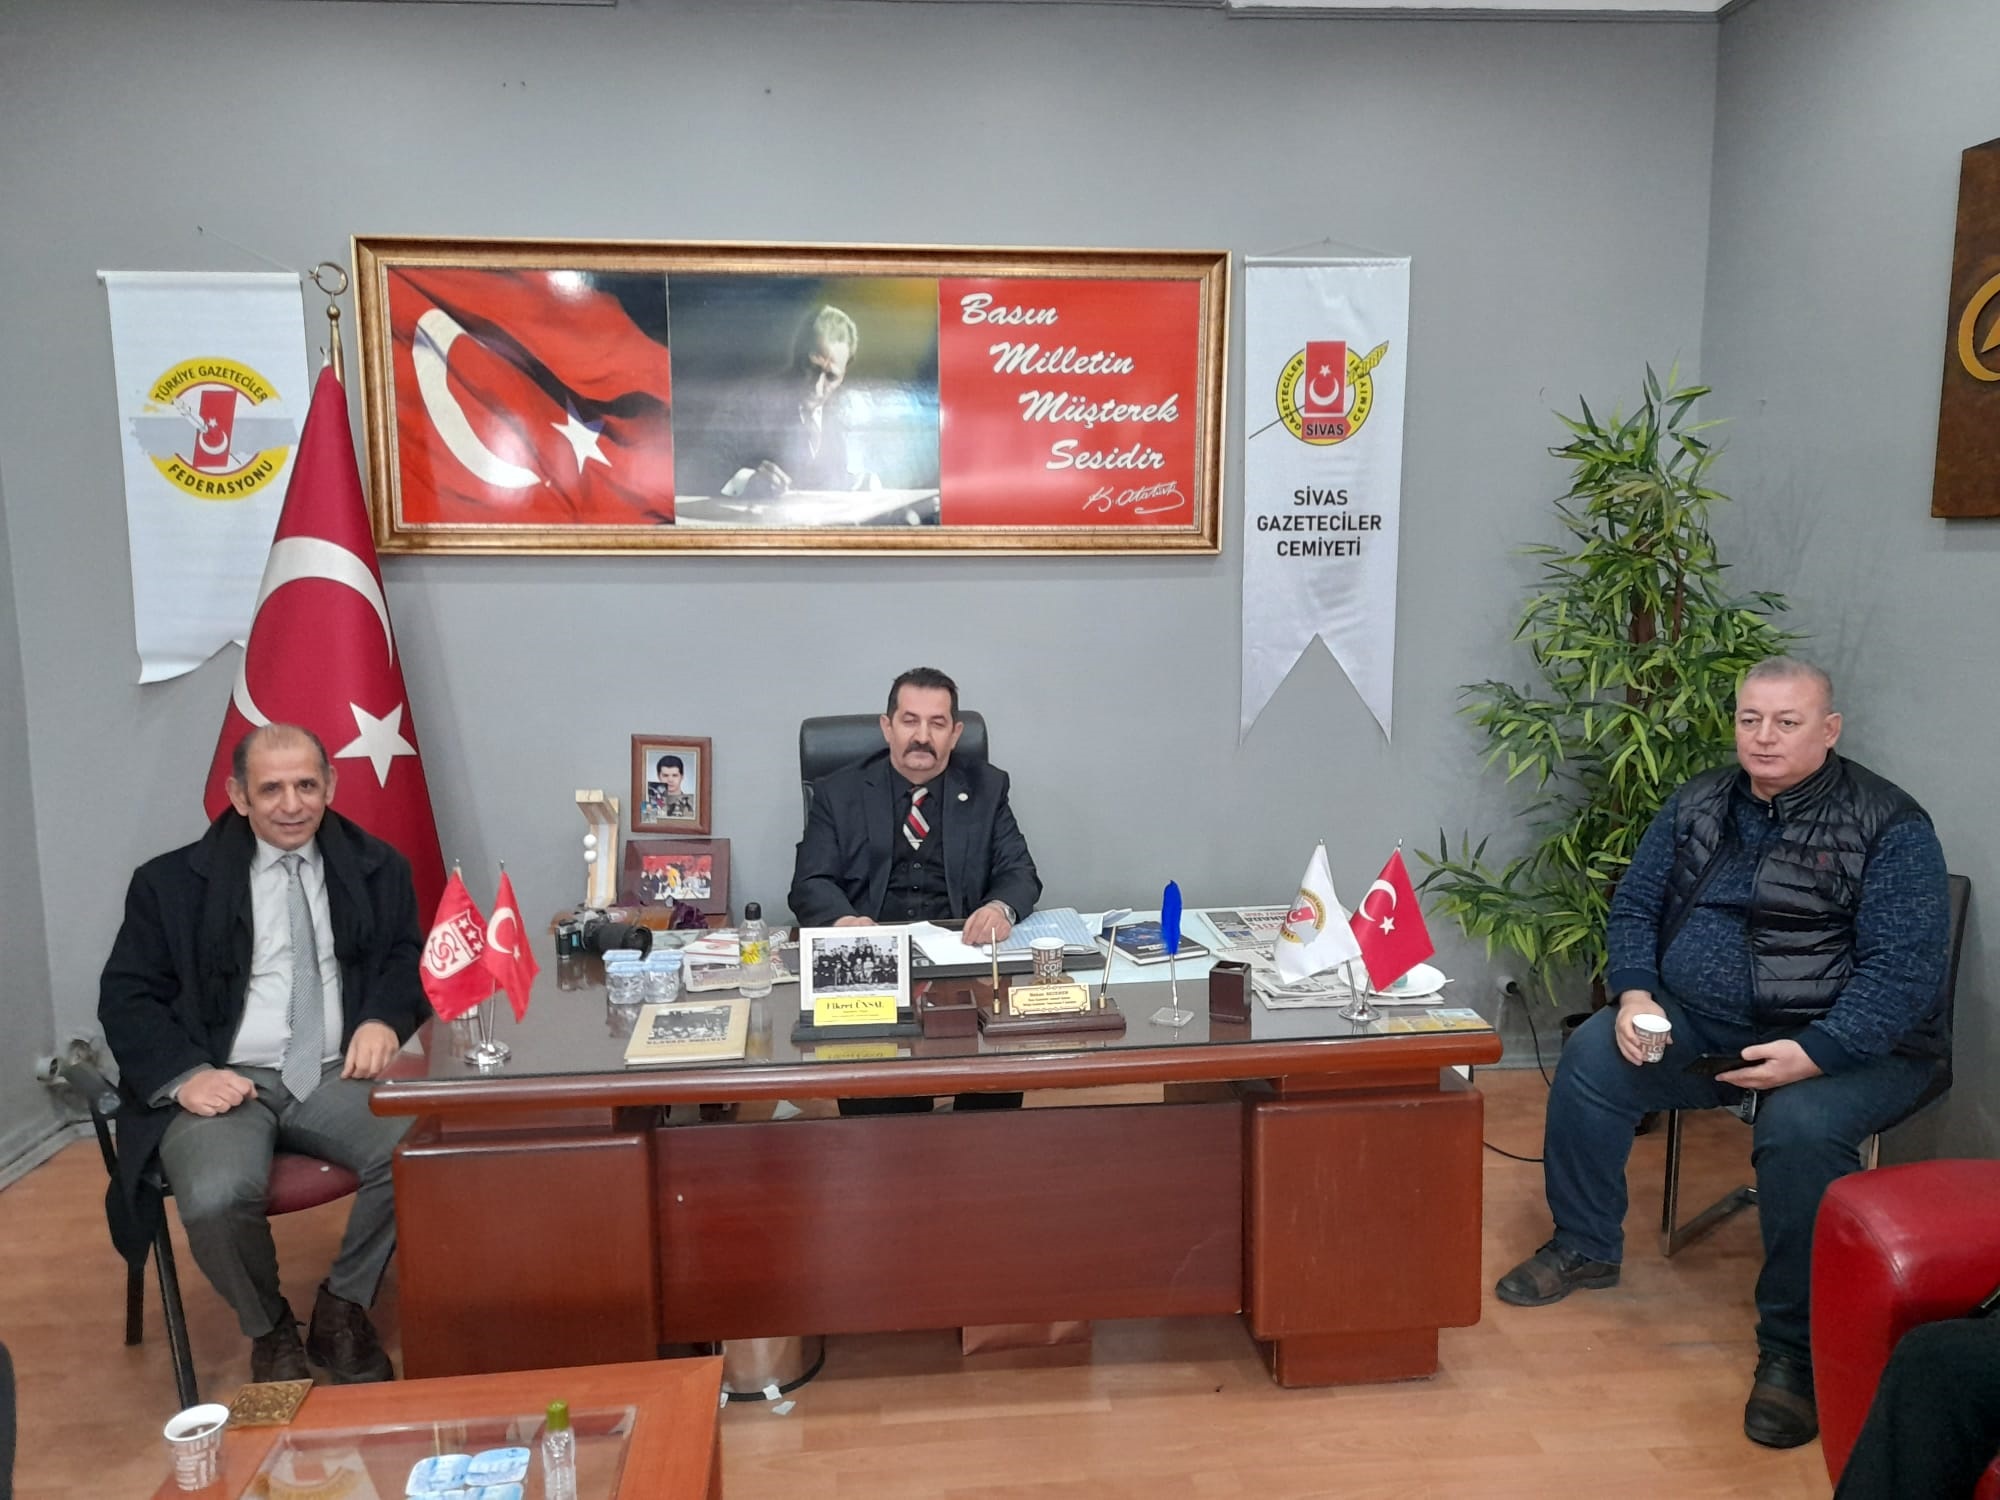 Sivas Gazeteciler Cemiyeti Genel Kurul yaptı...